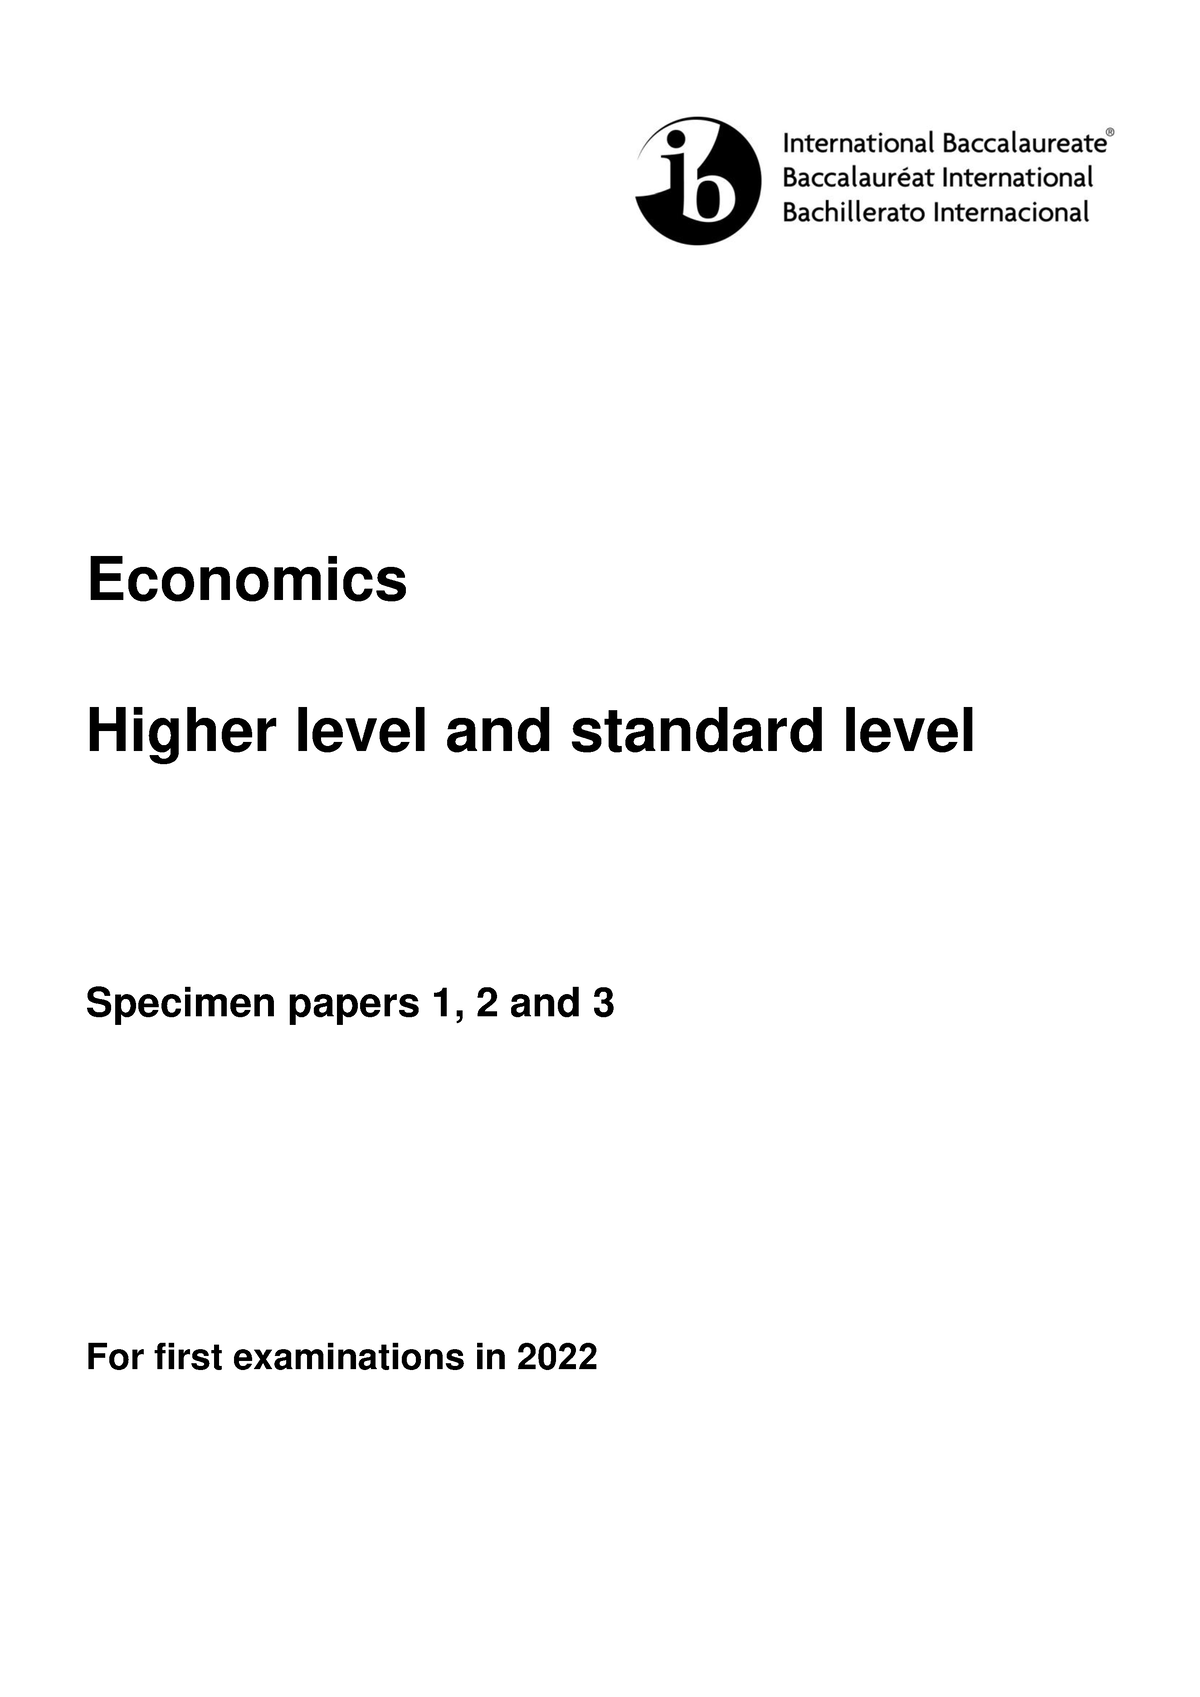 possible essay for economics paper 1 november 2022